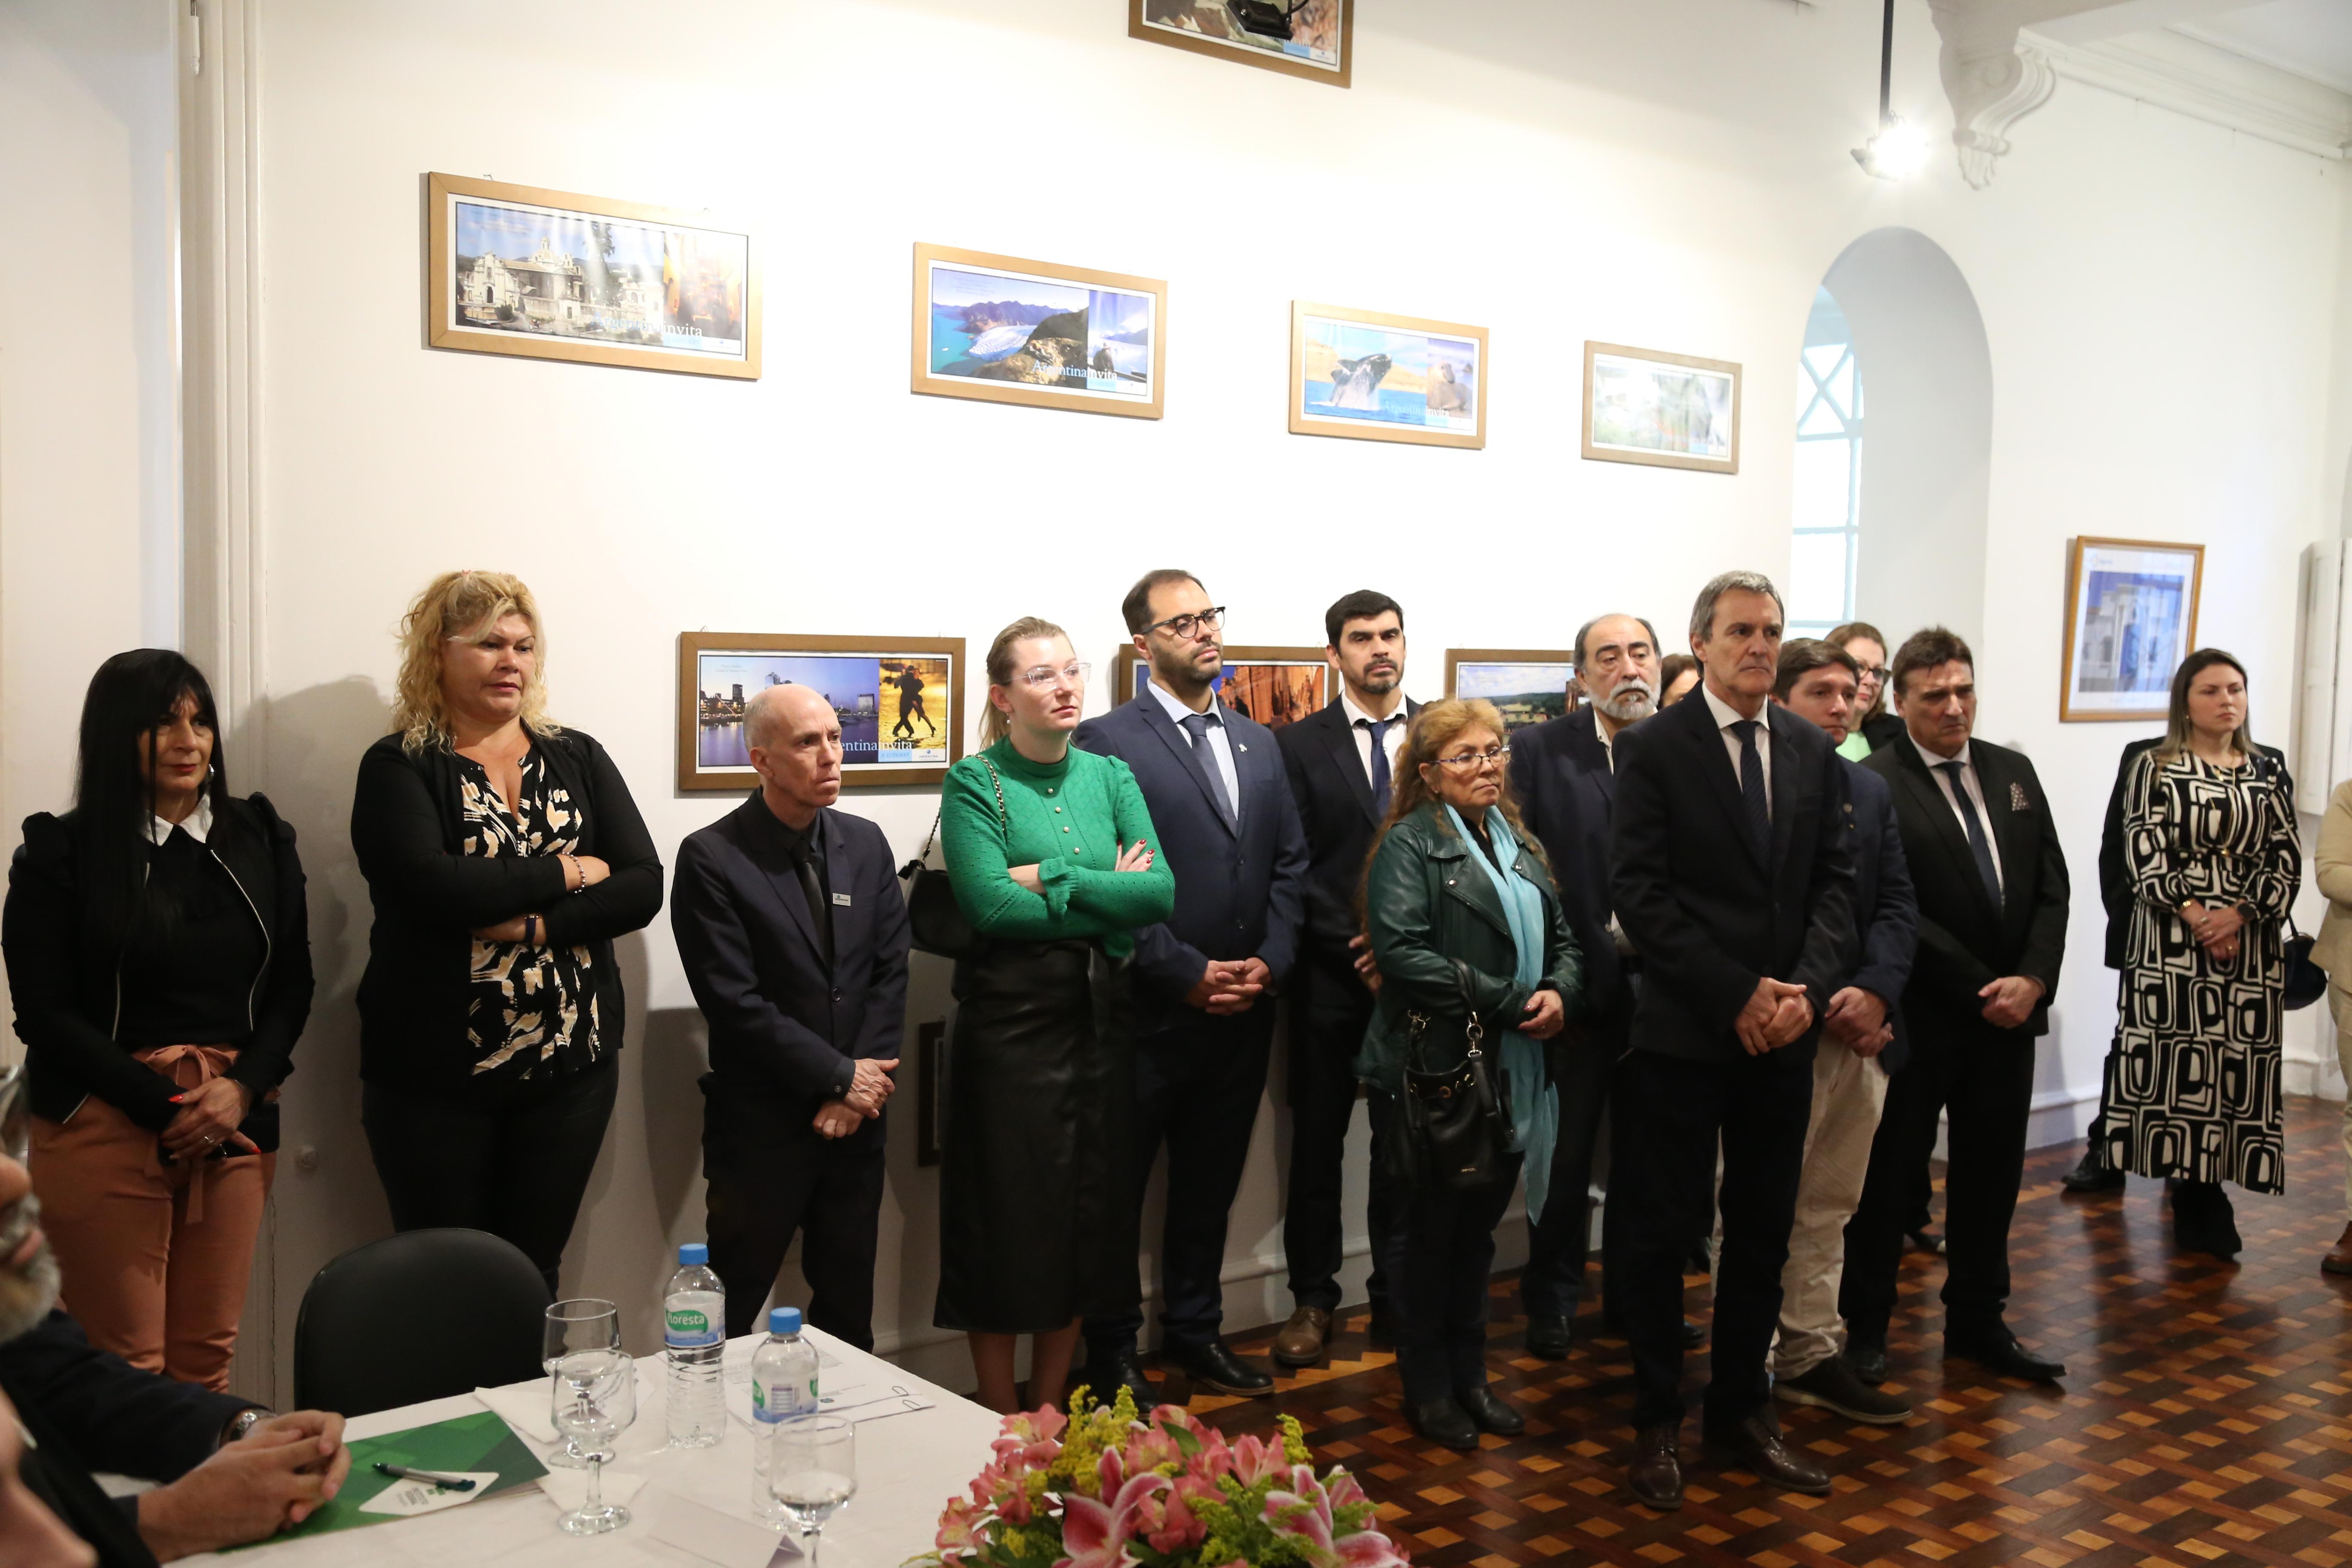 Autoridades acadêmicas e políticas prestigiaram o ato de assinatura do acordo - Foto: Ronaldo Estevam